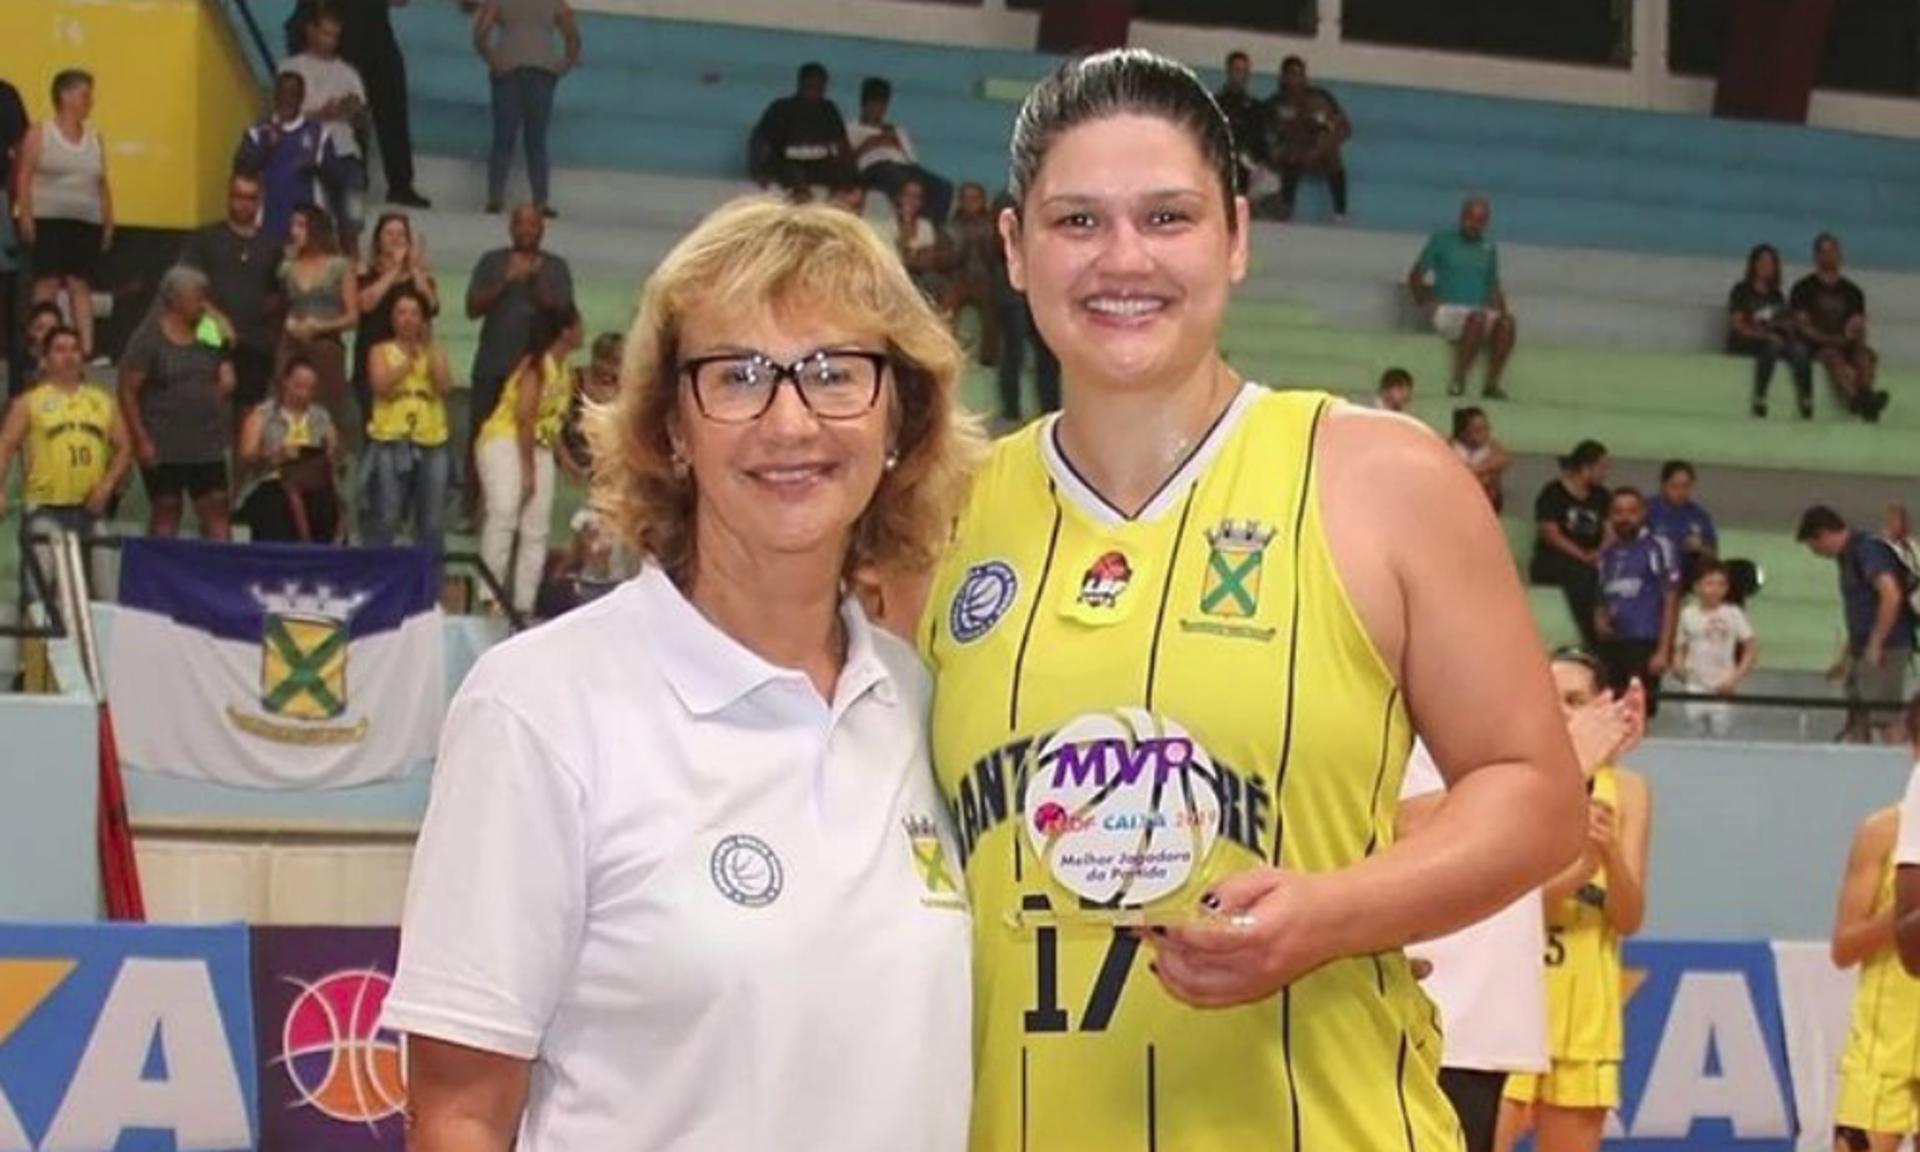 Barbara recebeu o troféu de melhor do jogo das mãos de Arilza Coraça (Jorge Bevilacqua)